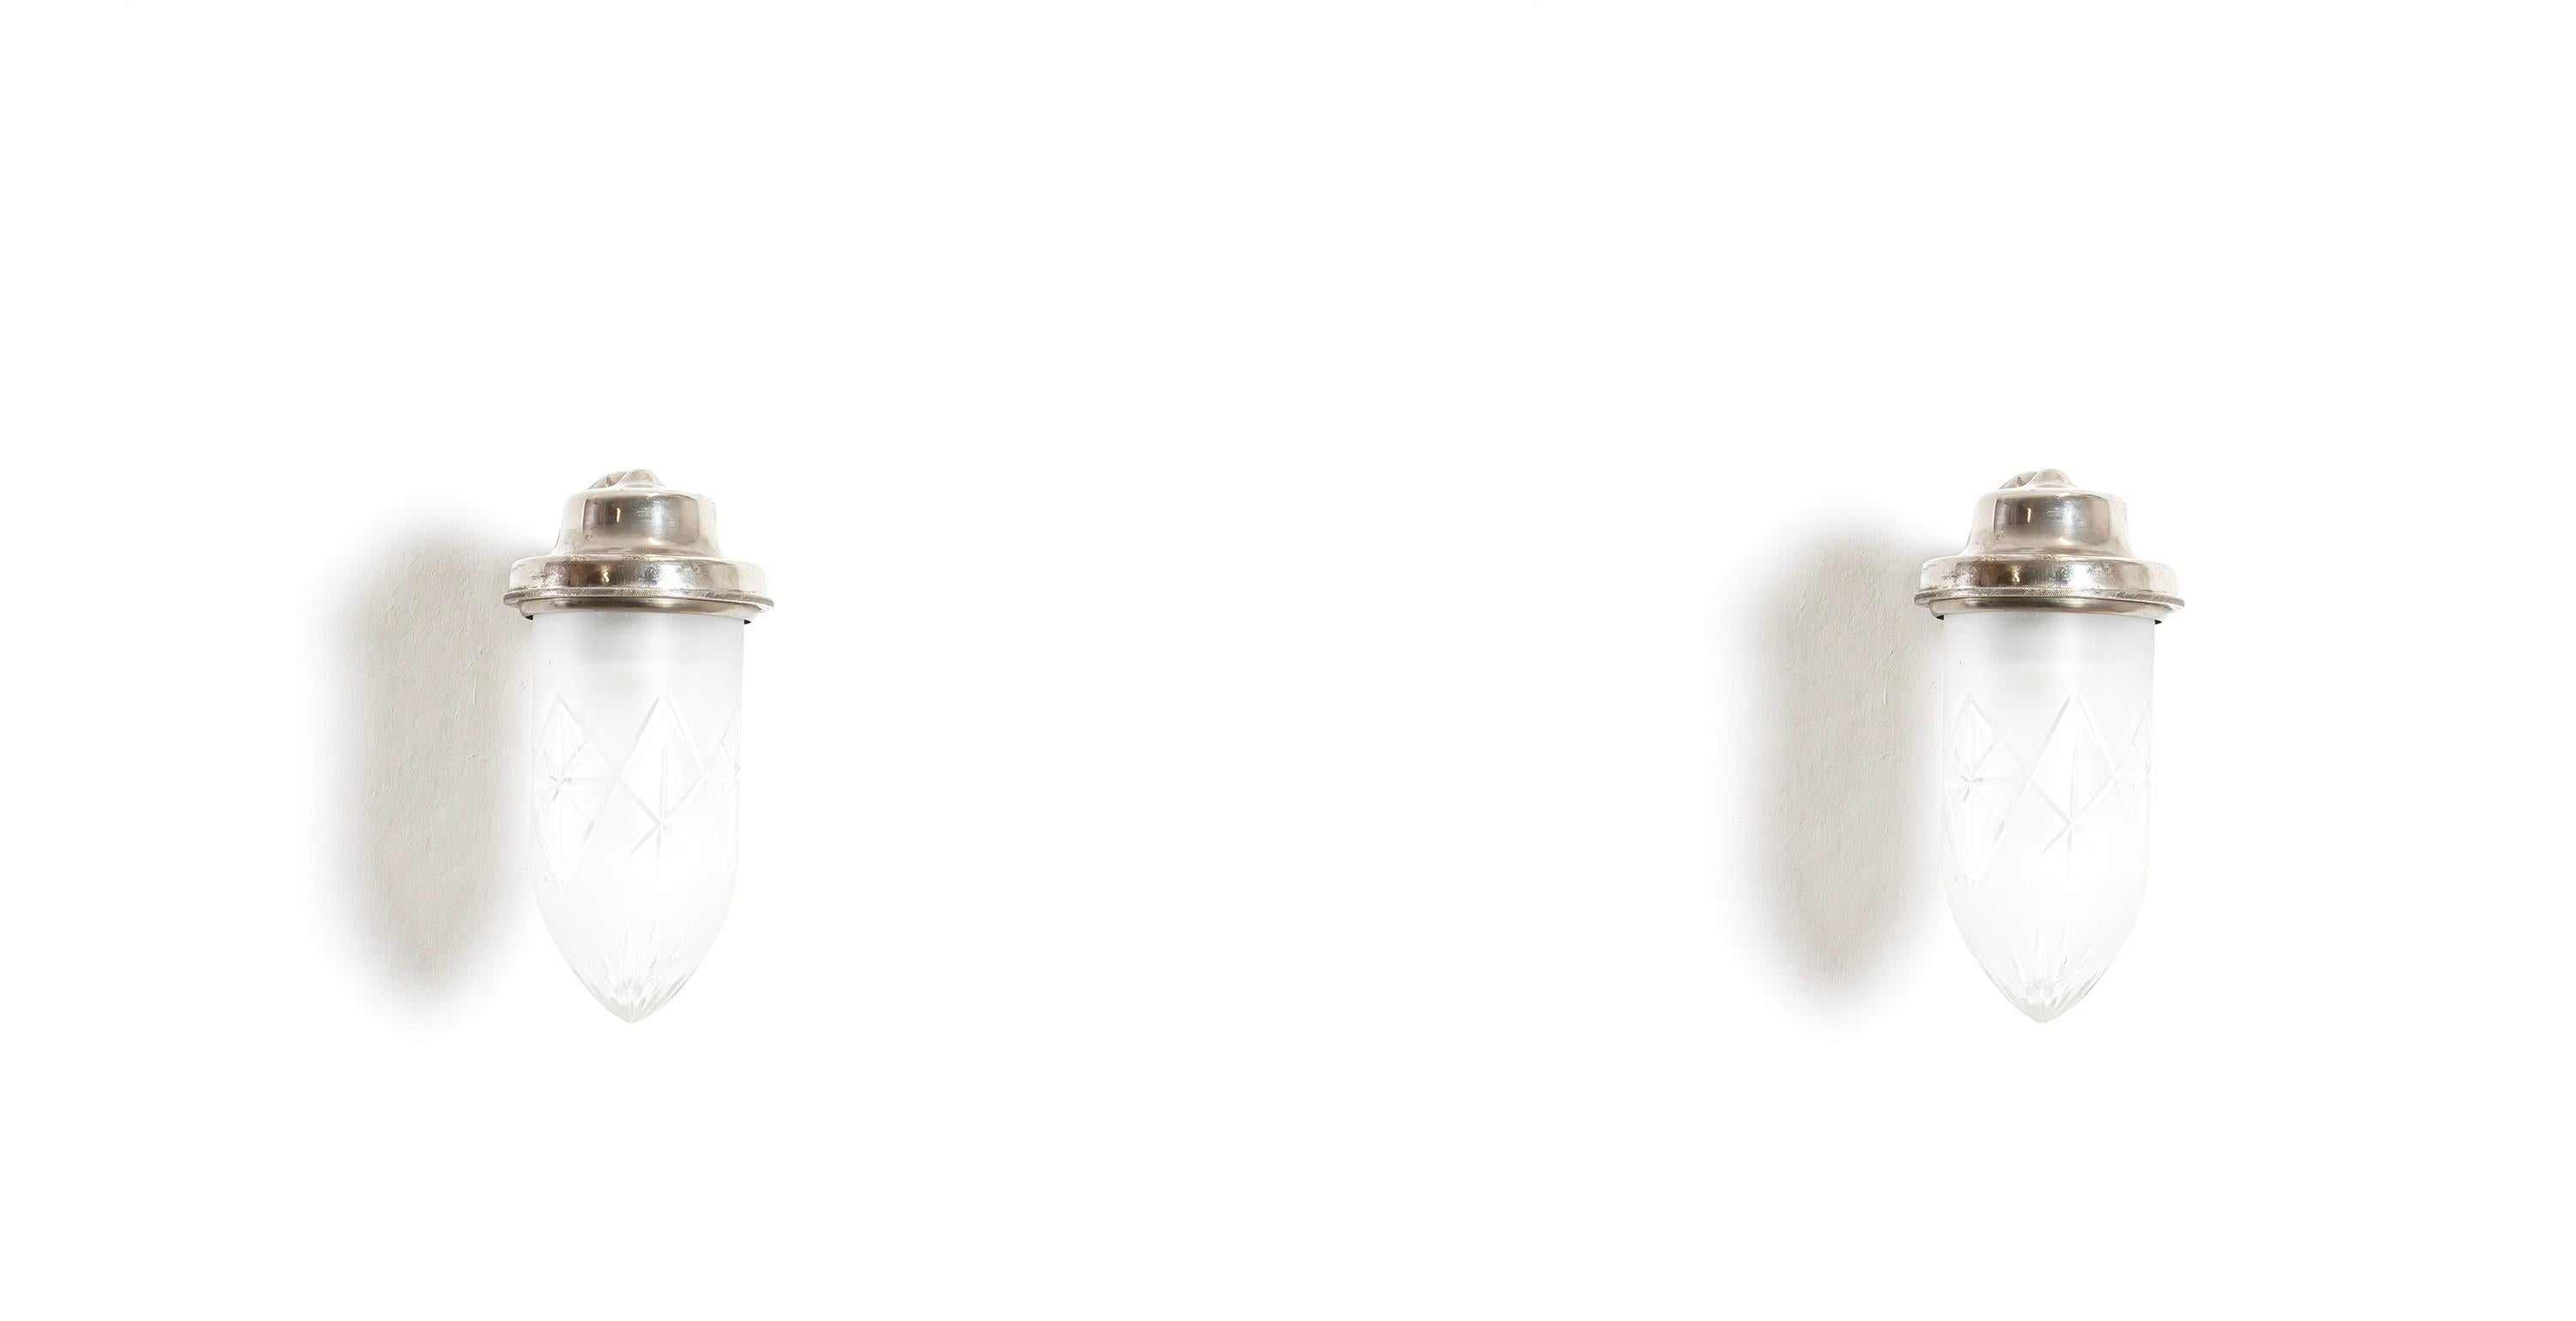 Skulpturales und organisch geformtes Paar Wandlampen aus Zinn und mundgeblasenem Glas. Die Lampen wurden in Norwegen entworfen und hergestellt, etwa in der zweiten Hälfte der 1930er Jahre. Beide Lampen sind voll funktionsfähig und in gutem